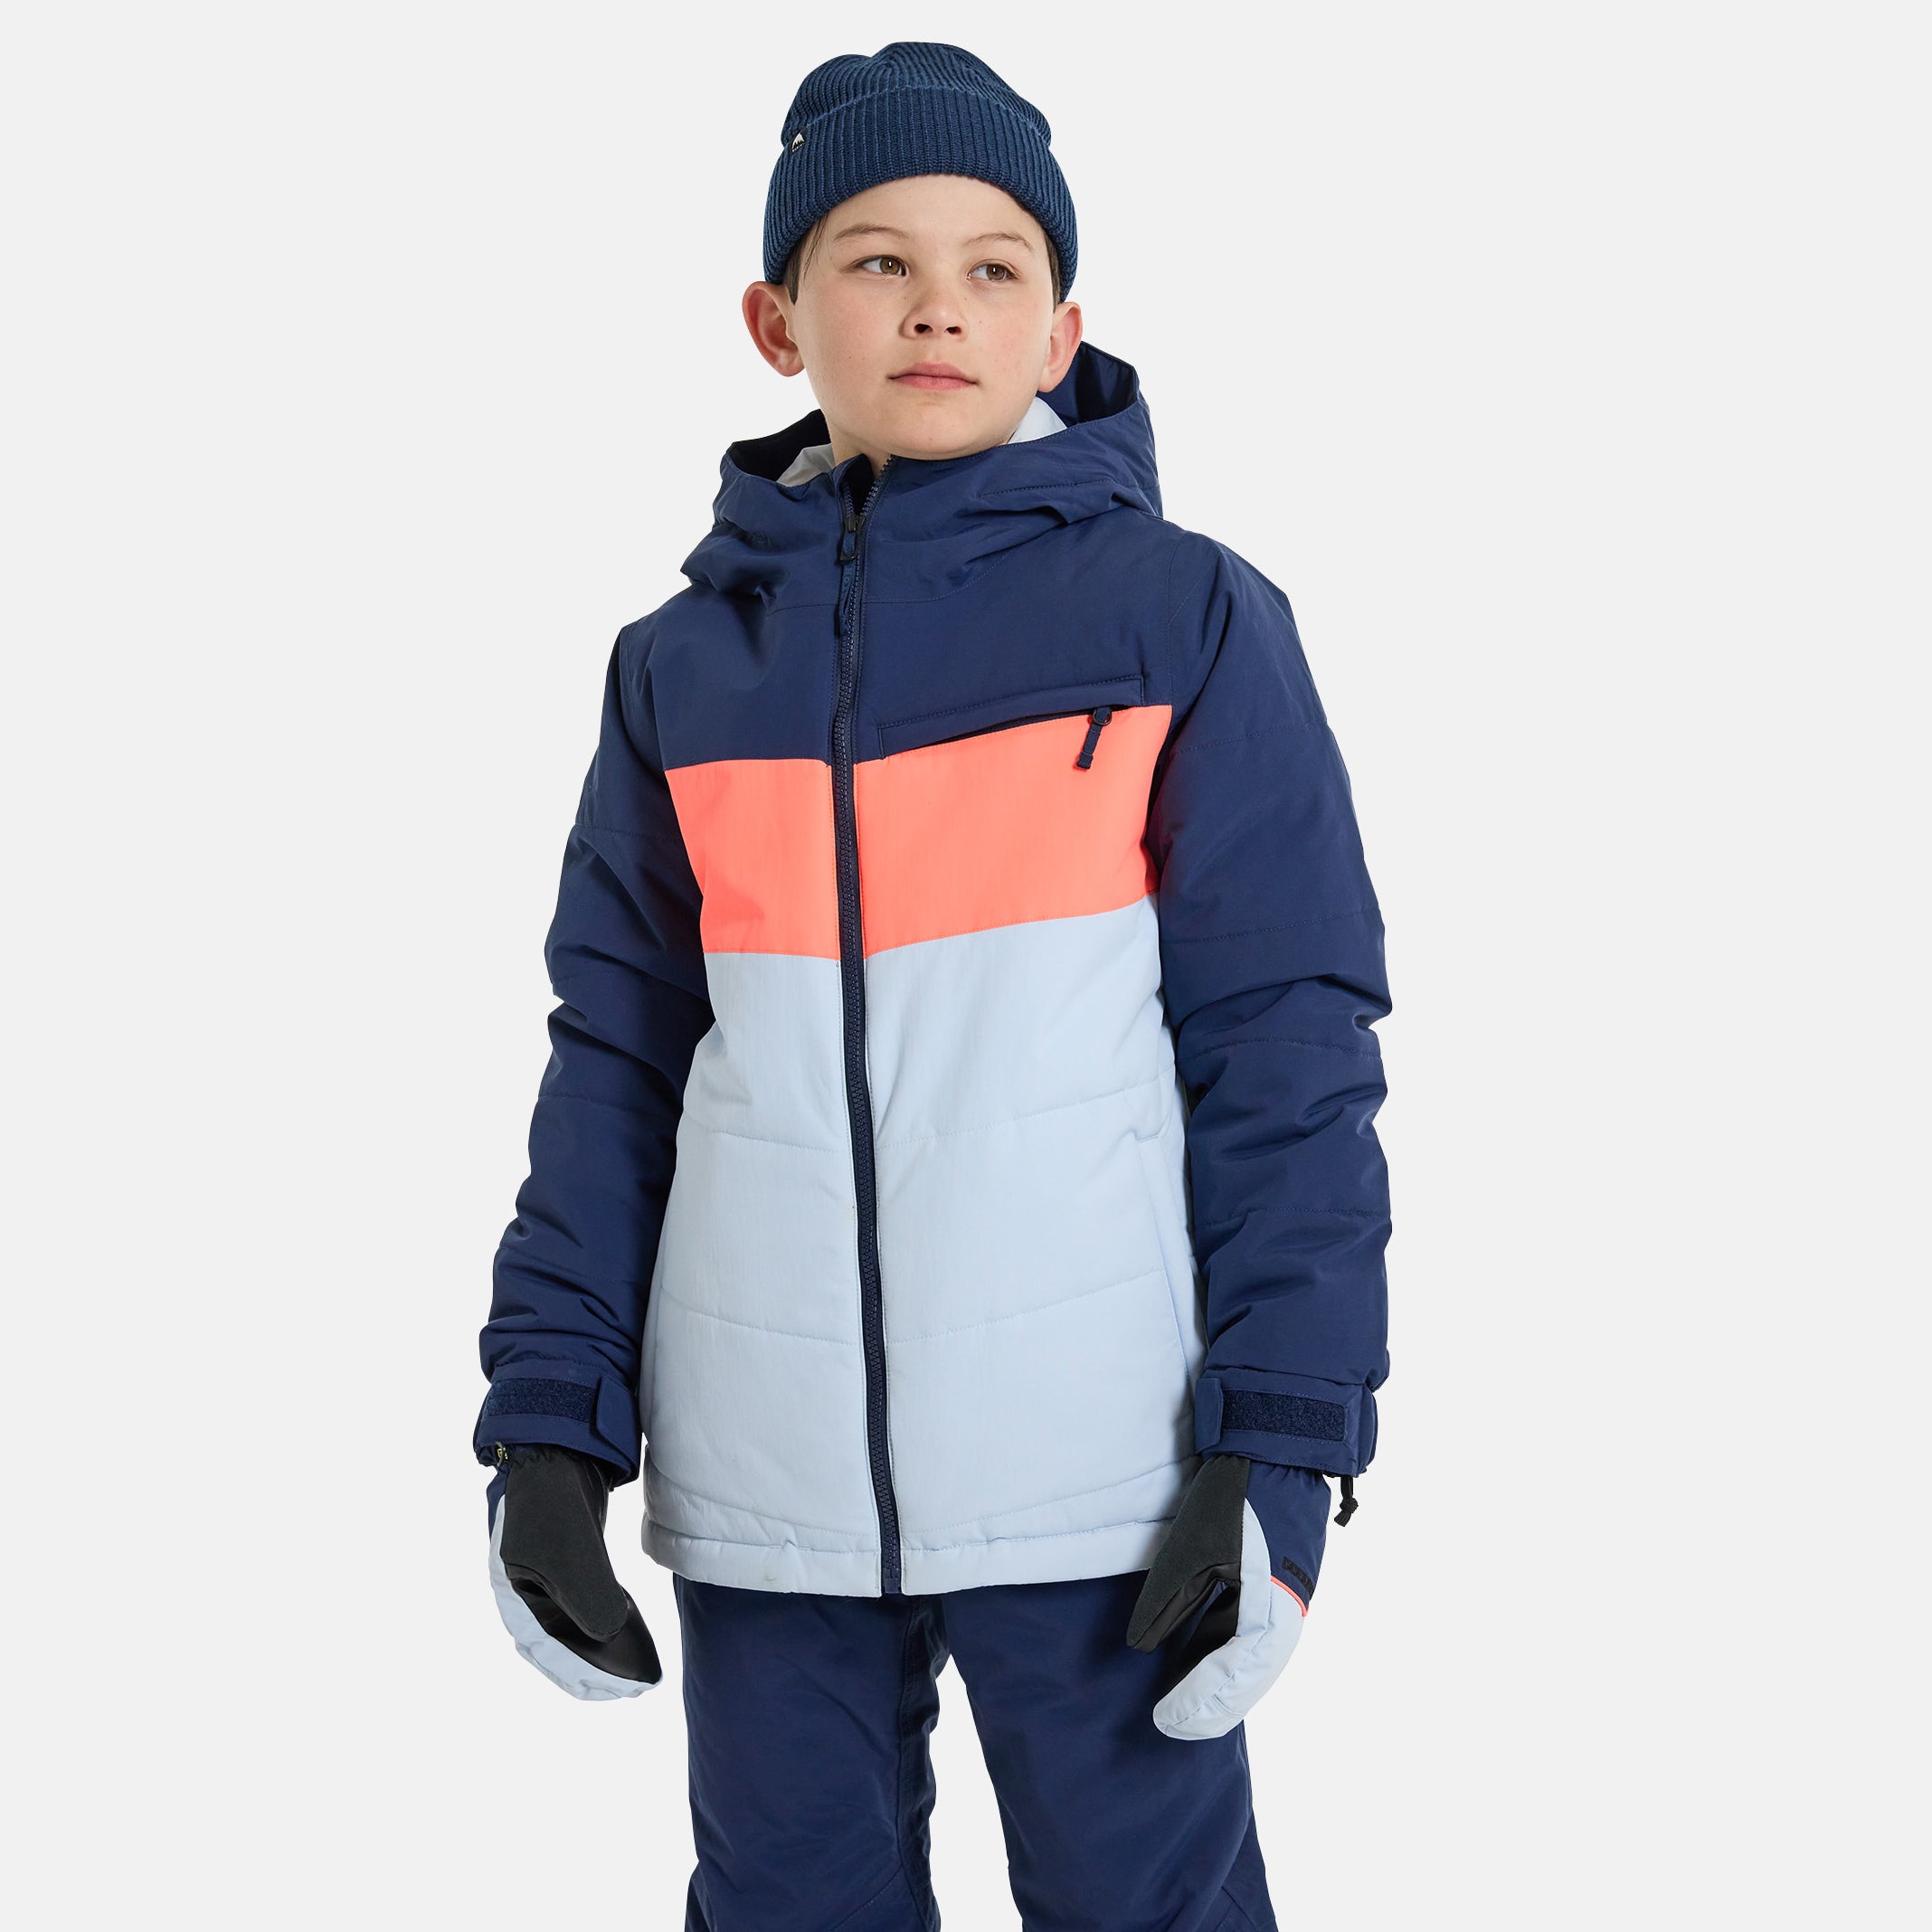 Boys Blue Snow Jacket